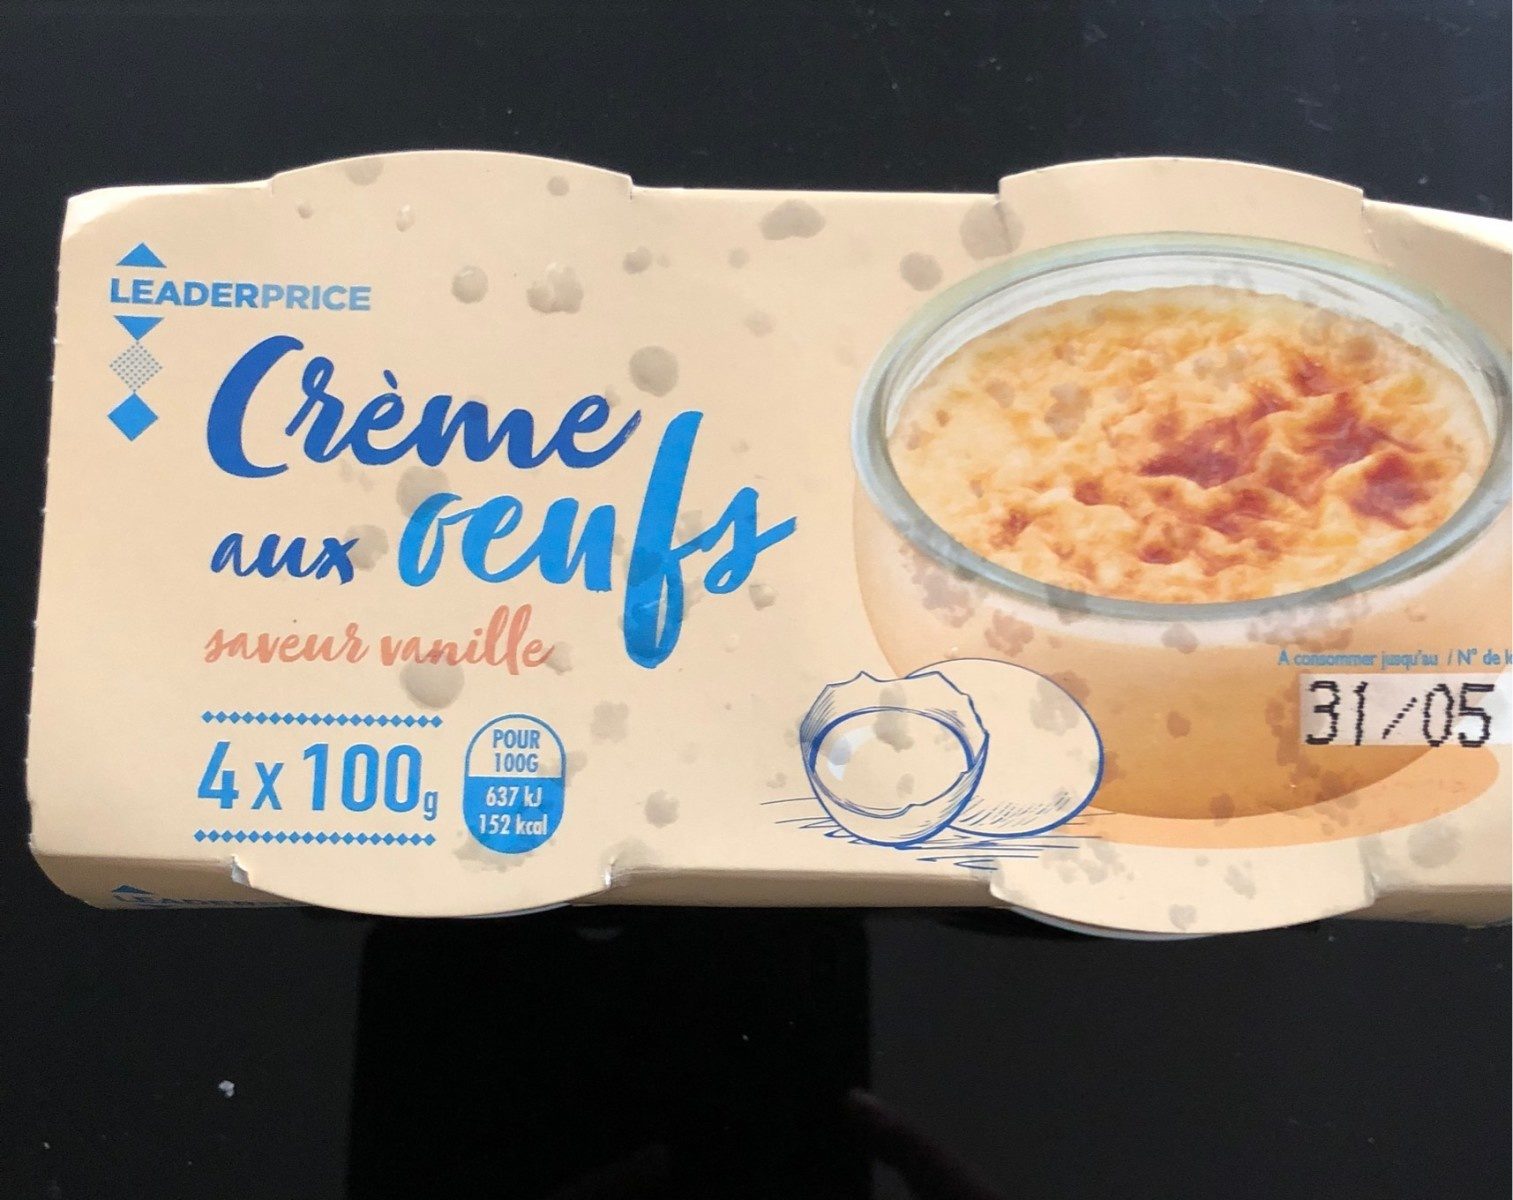 Crème aux oeufs saveur vanille - Producto - fr